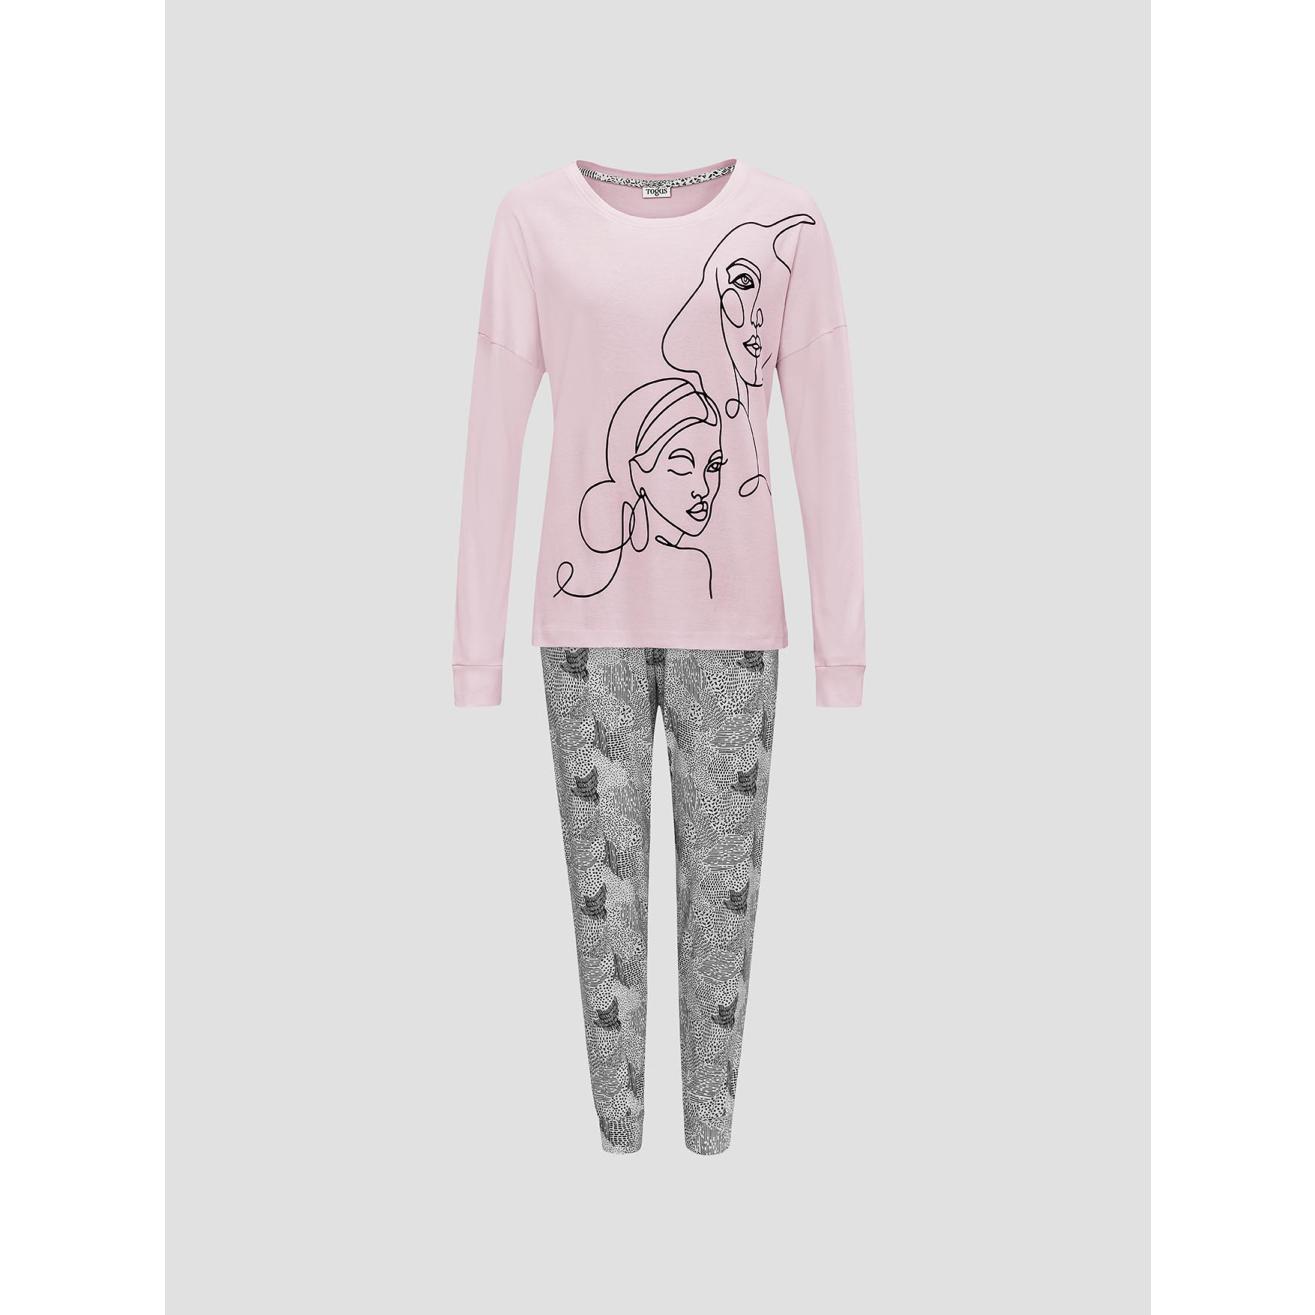 Пижама для девочек Togas Teens Кэрри розово-серая 152 см жен пижама good night серый р 52